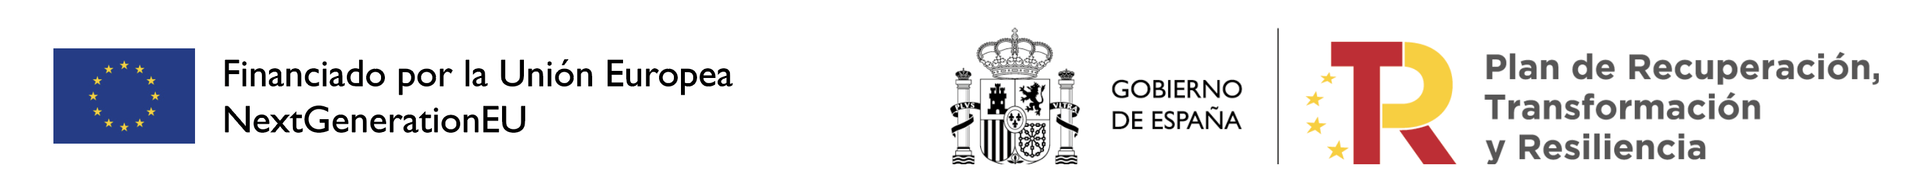 Una imagen borrosa de dos logotipos sobre un fondo blanco.